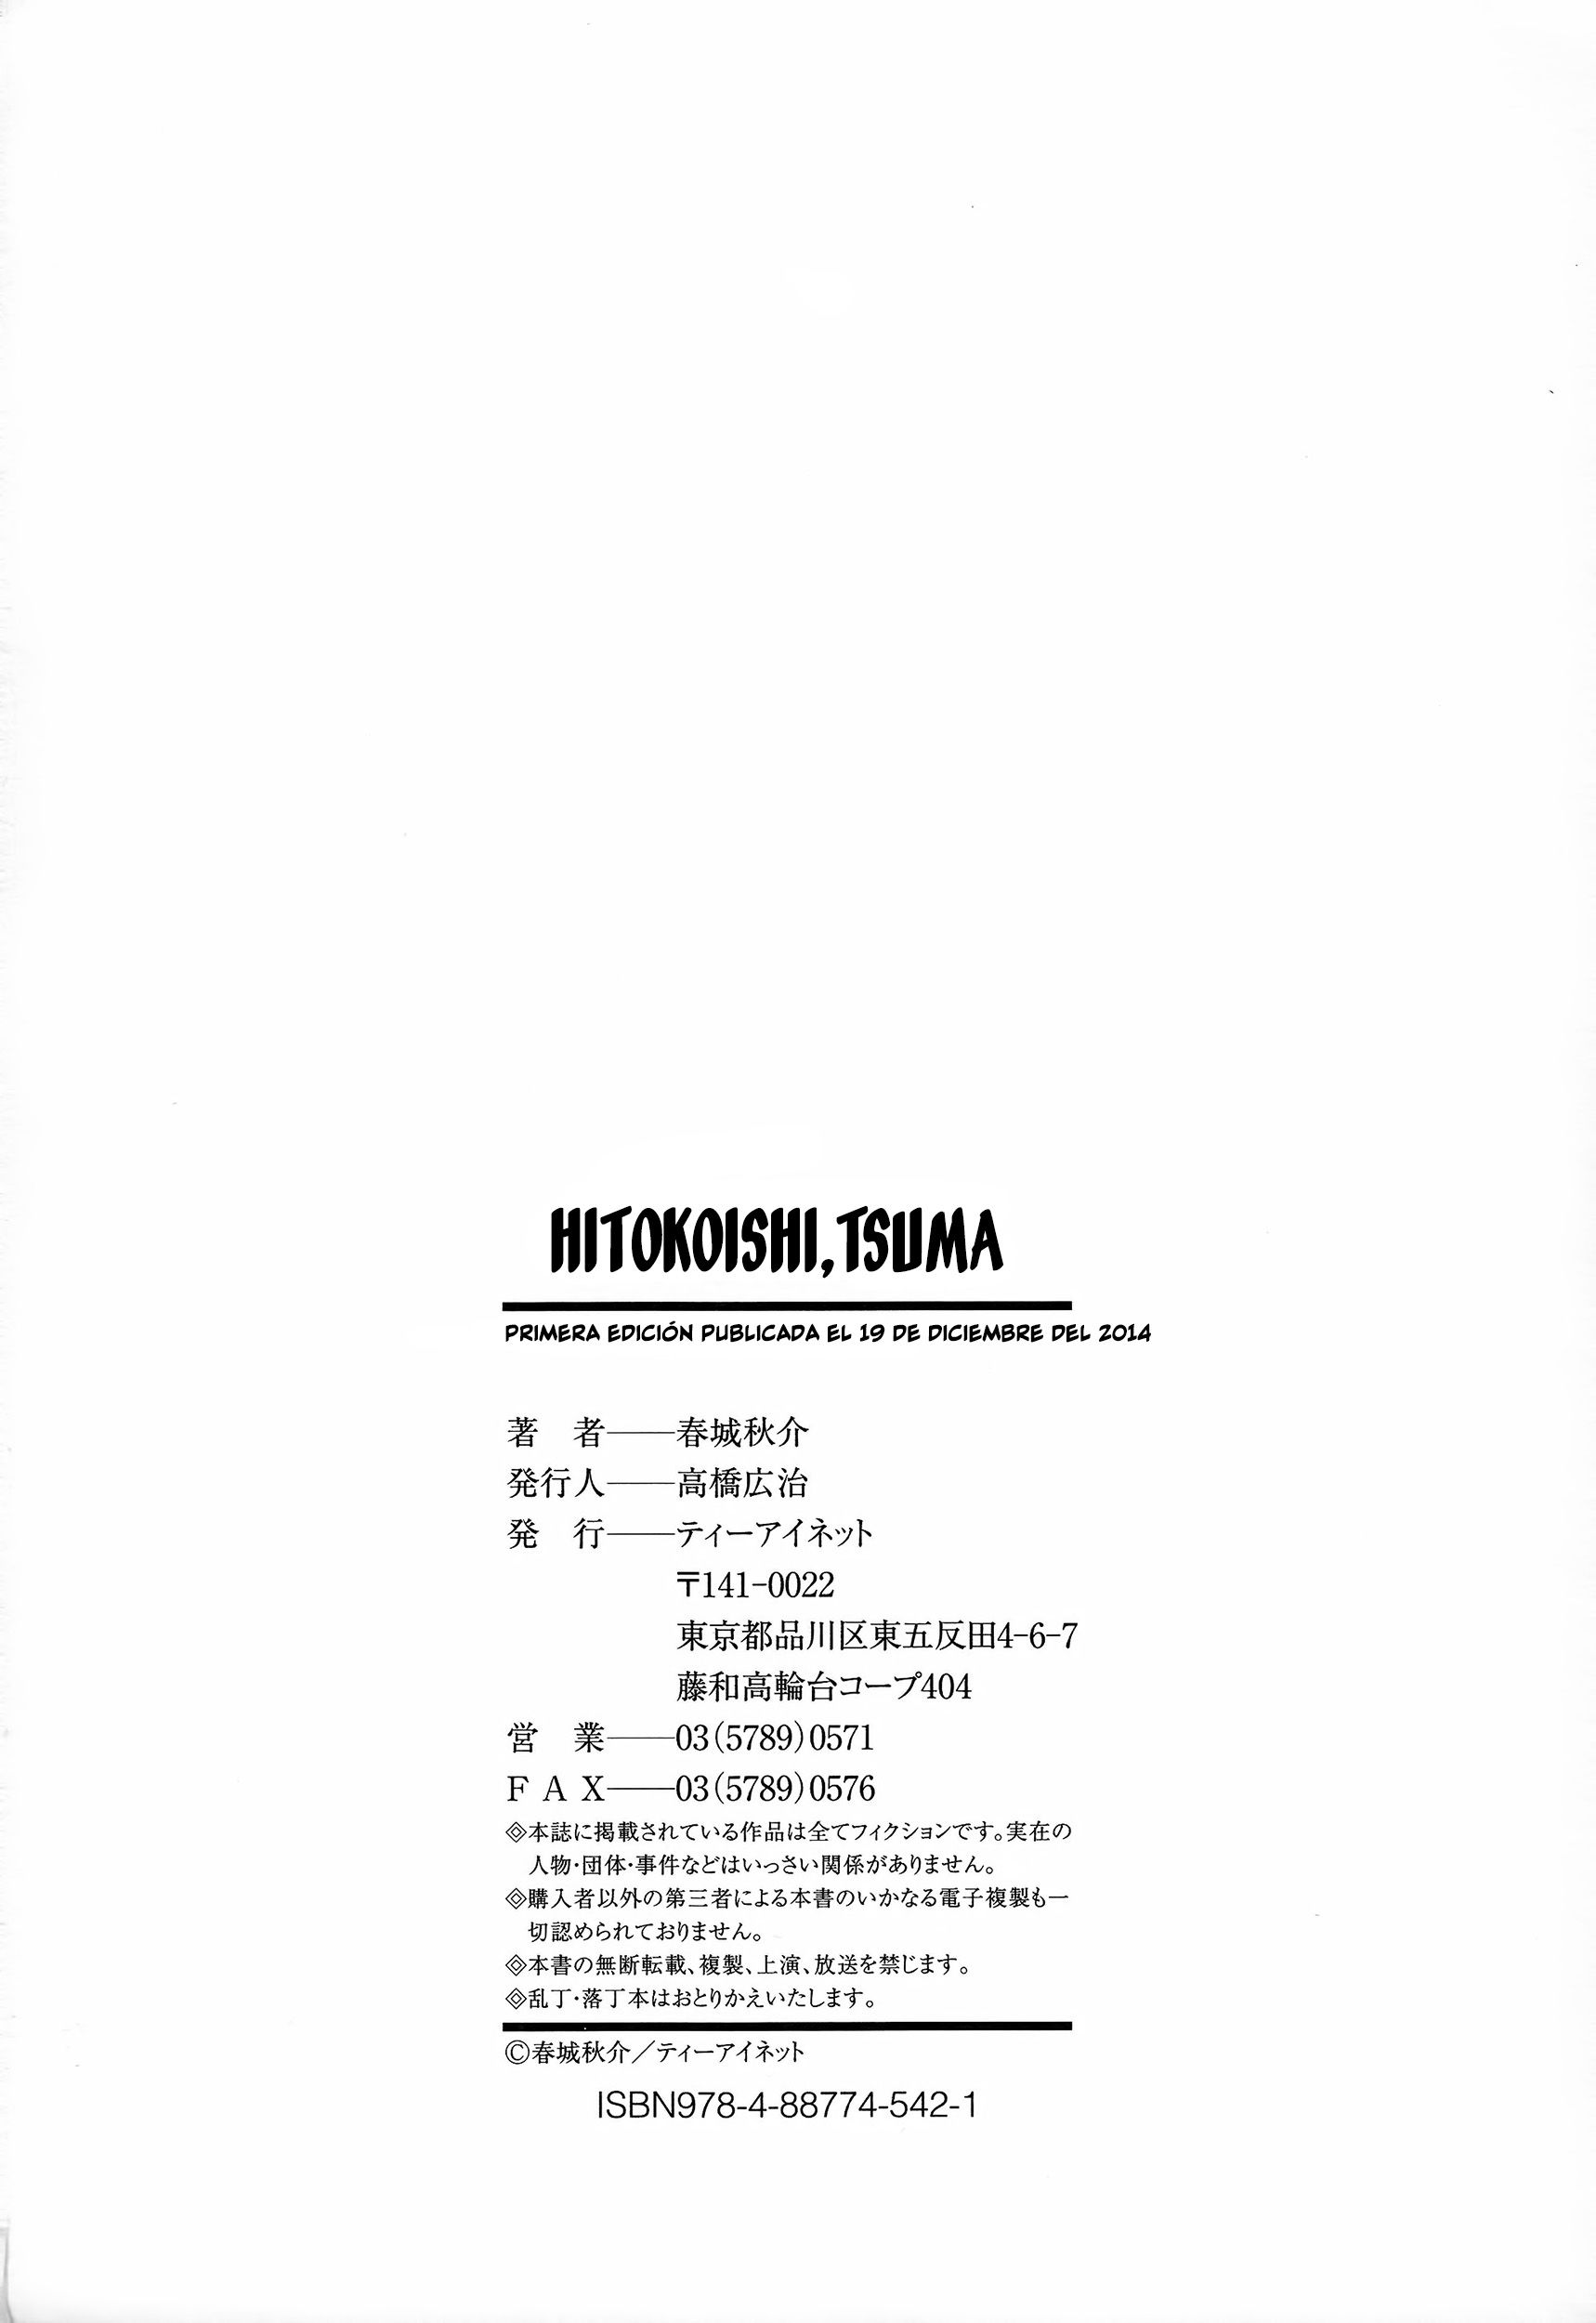 Hitokoishi,Tsuma 07 - 17